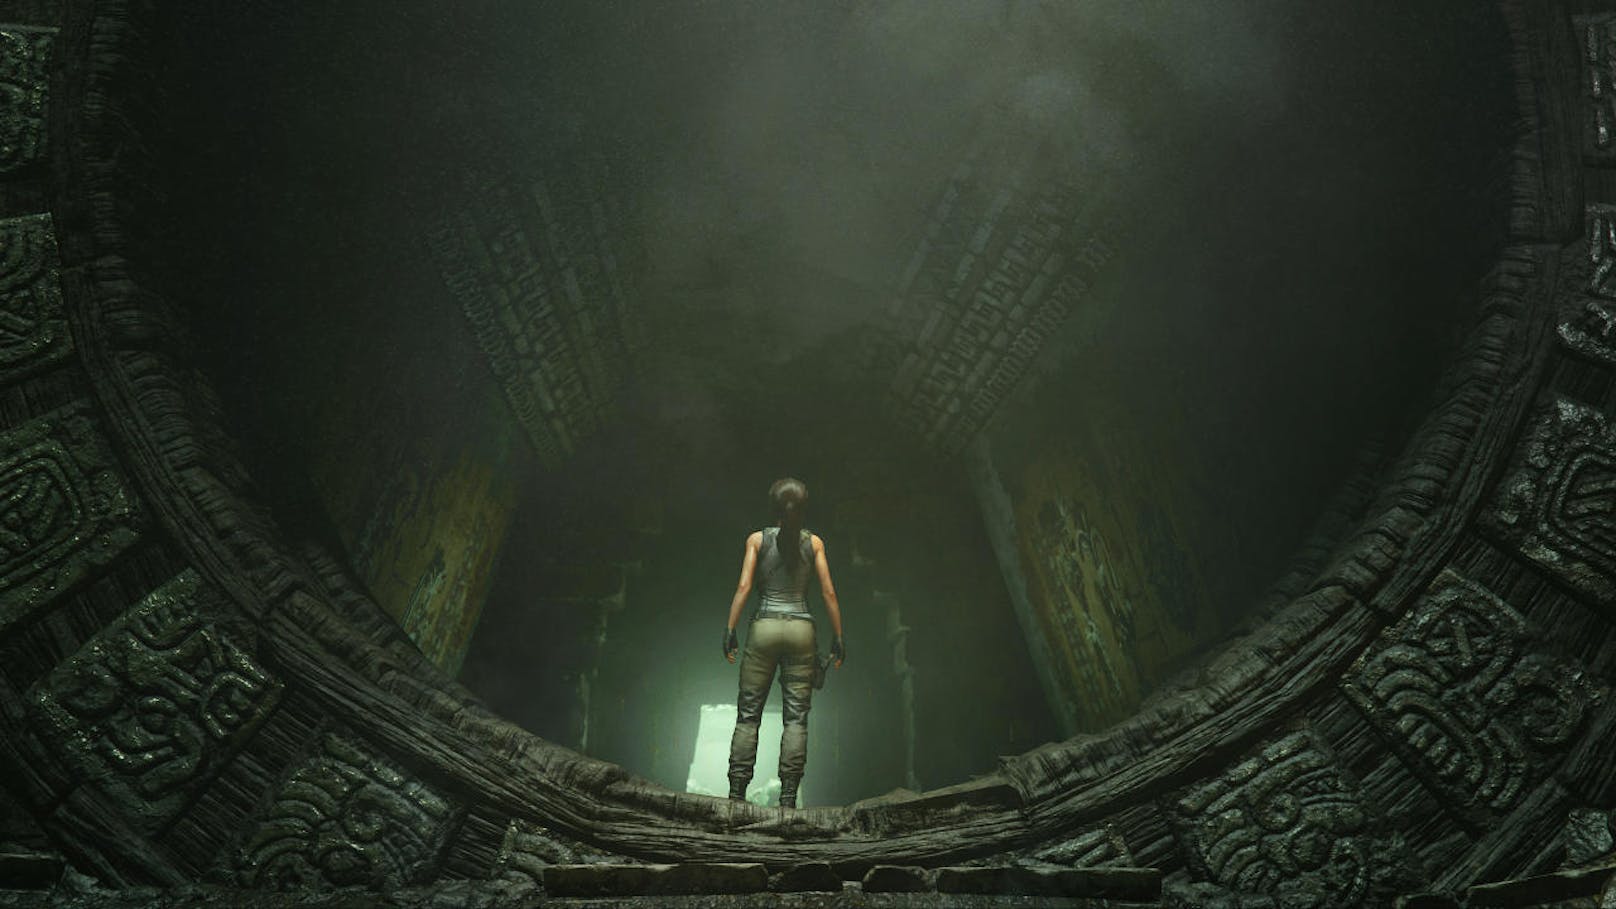 Shadow of the Tomb Raider ist ein würdiger Abschluss der Trilogie. Zwar nicht revolutionär, aber durchwegs unterhaltsam. Und eine komplett neue Spielerfahrung war ja auch nicht nötig. Denn Tomb Raider gehört ohnehin zu den besten Abenteuer-Games, die zurzeit erhältlich sind. Erst recht, seitdem sich Nathan Drake mit Uncharted in den Ruhestand verabschiedet hat.